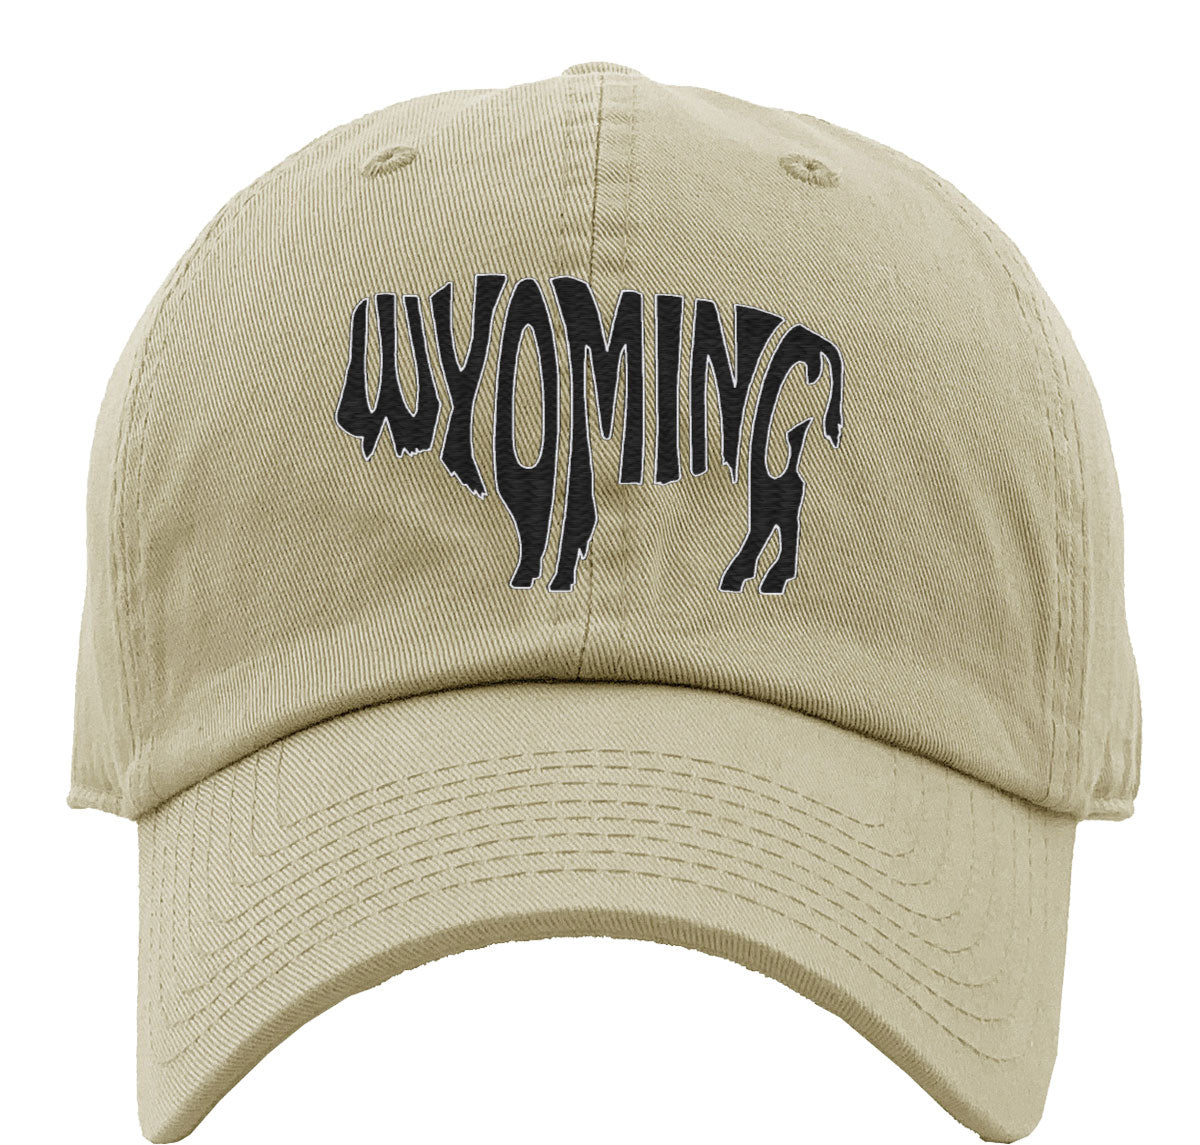 Wyoming Bison Buffalo Premium Baseball Cap